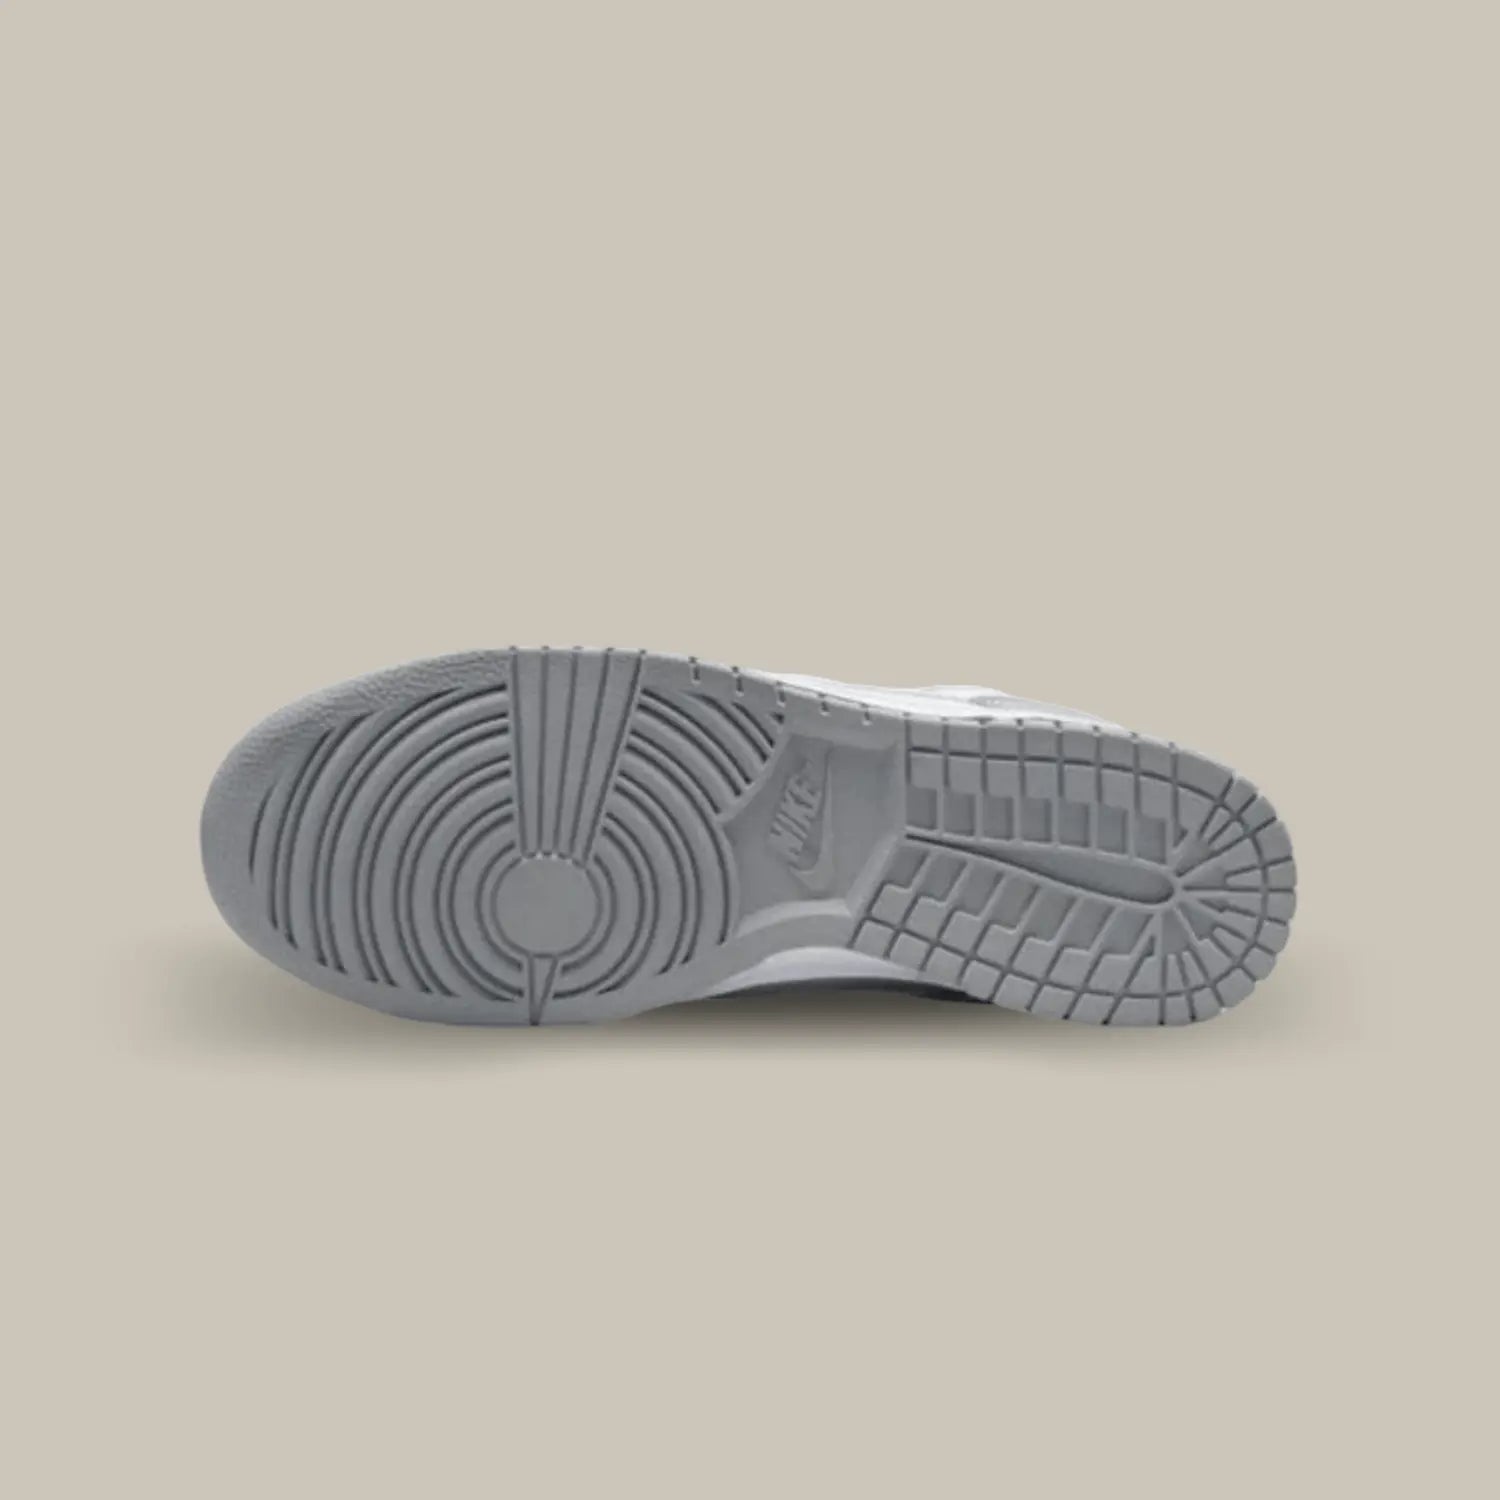 La semelle de la Nike Dunk Low Two Tone Grey de couleur grise.